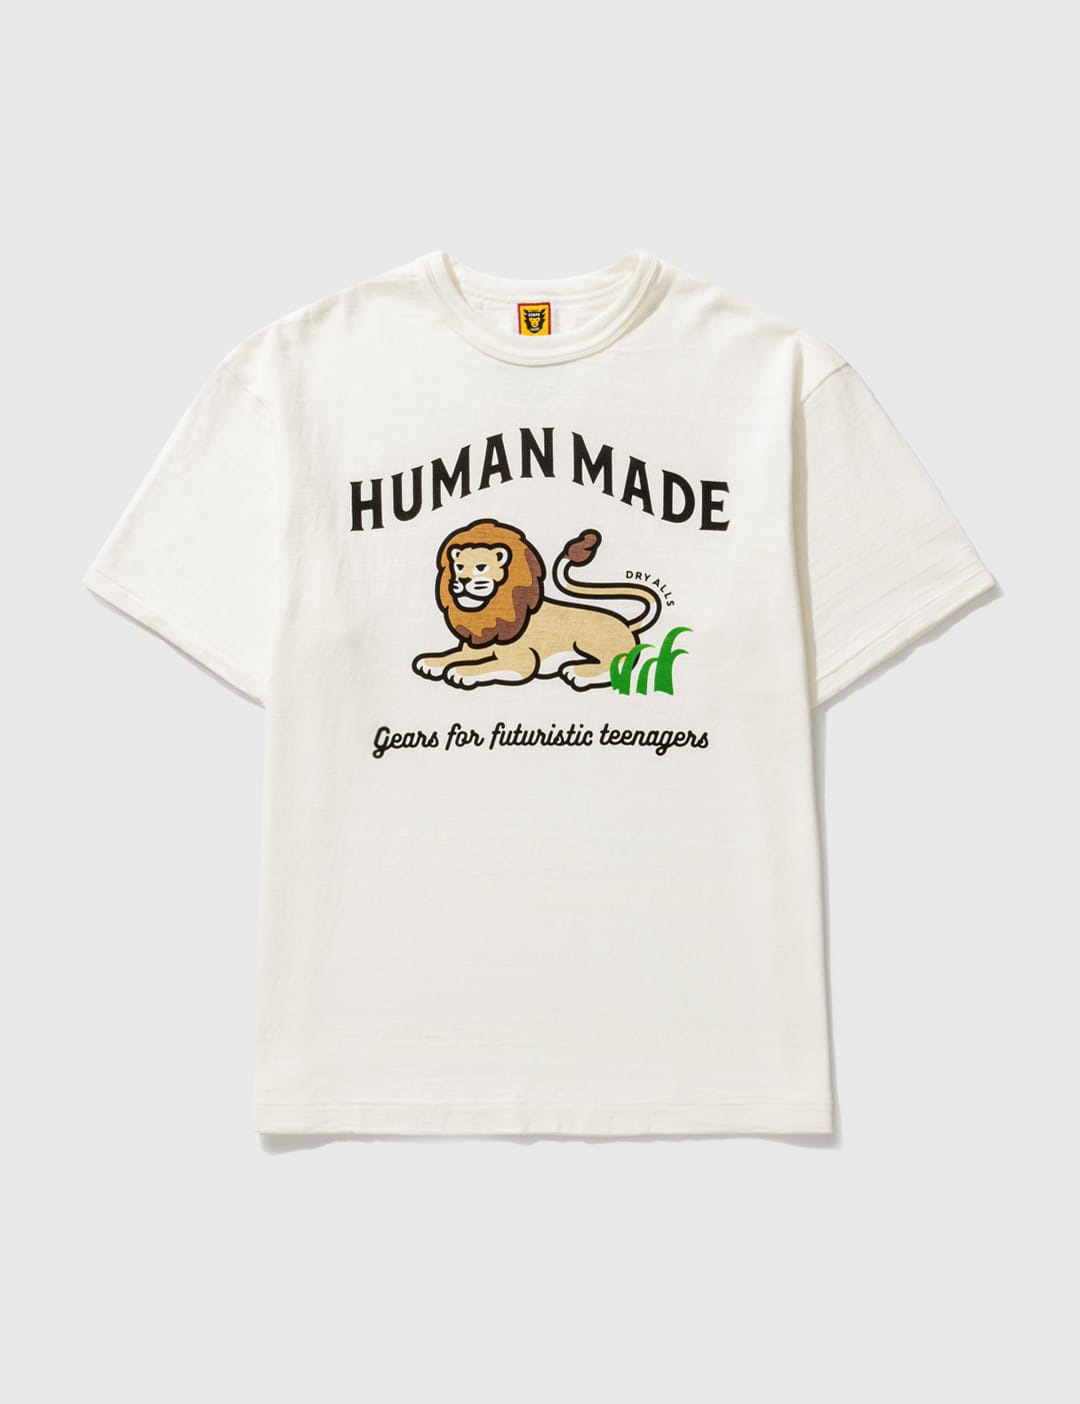 Human Made - ライオン Tシャツ | HBX - ハイプビースト(Hypebeast)が ...